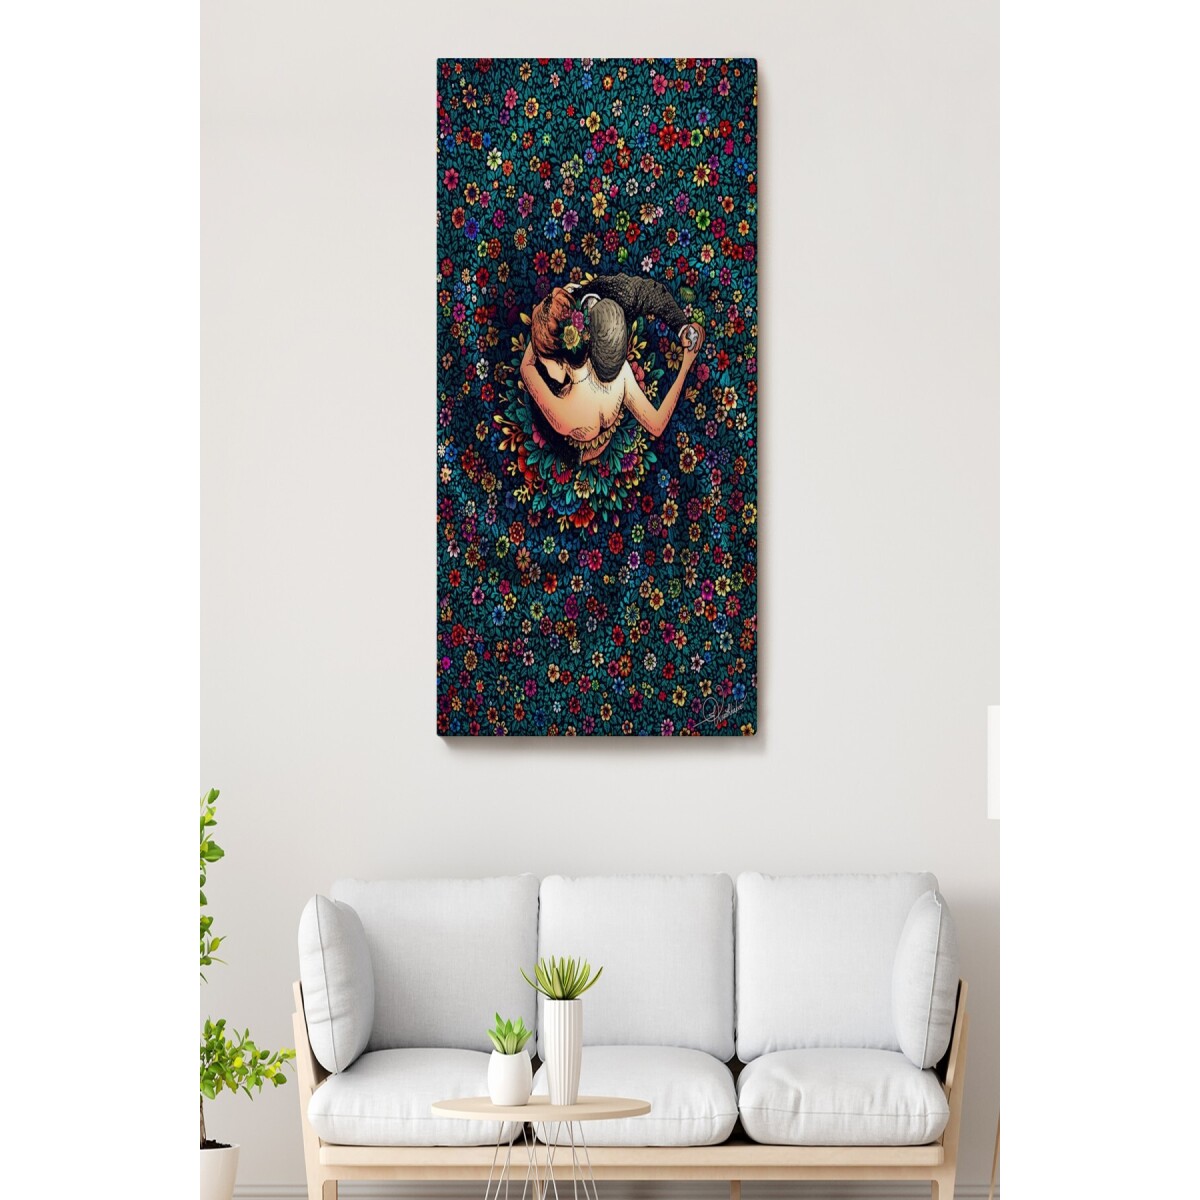 Renkli Çiçekler İçinde Dans Eden Sevgililer Duvar Tablosu-6200